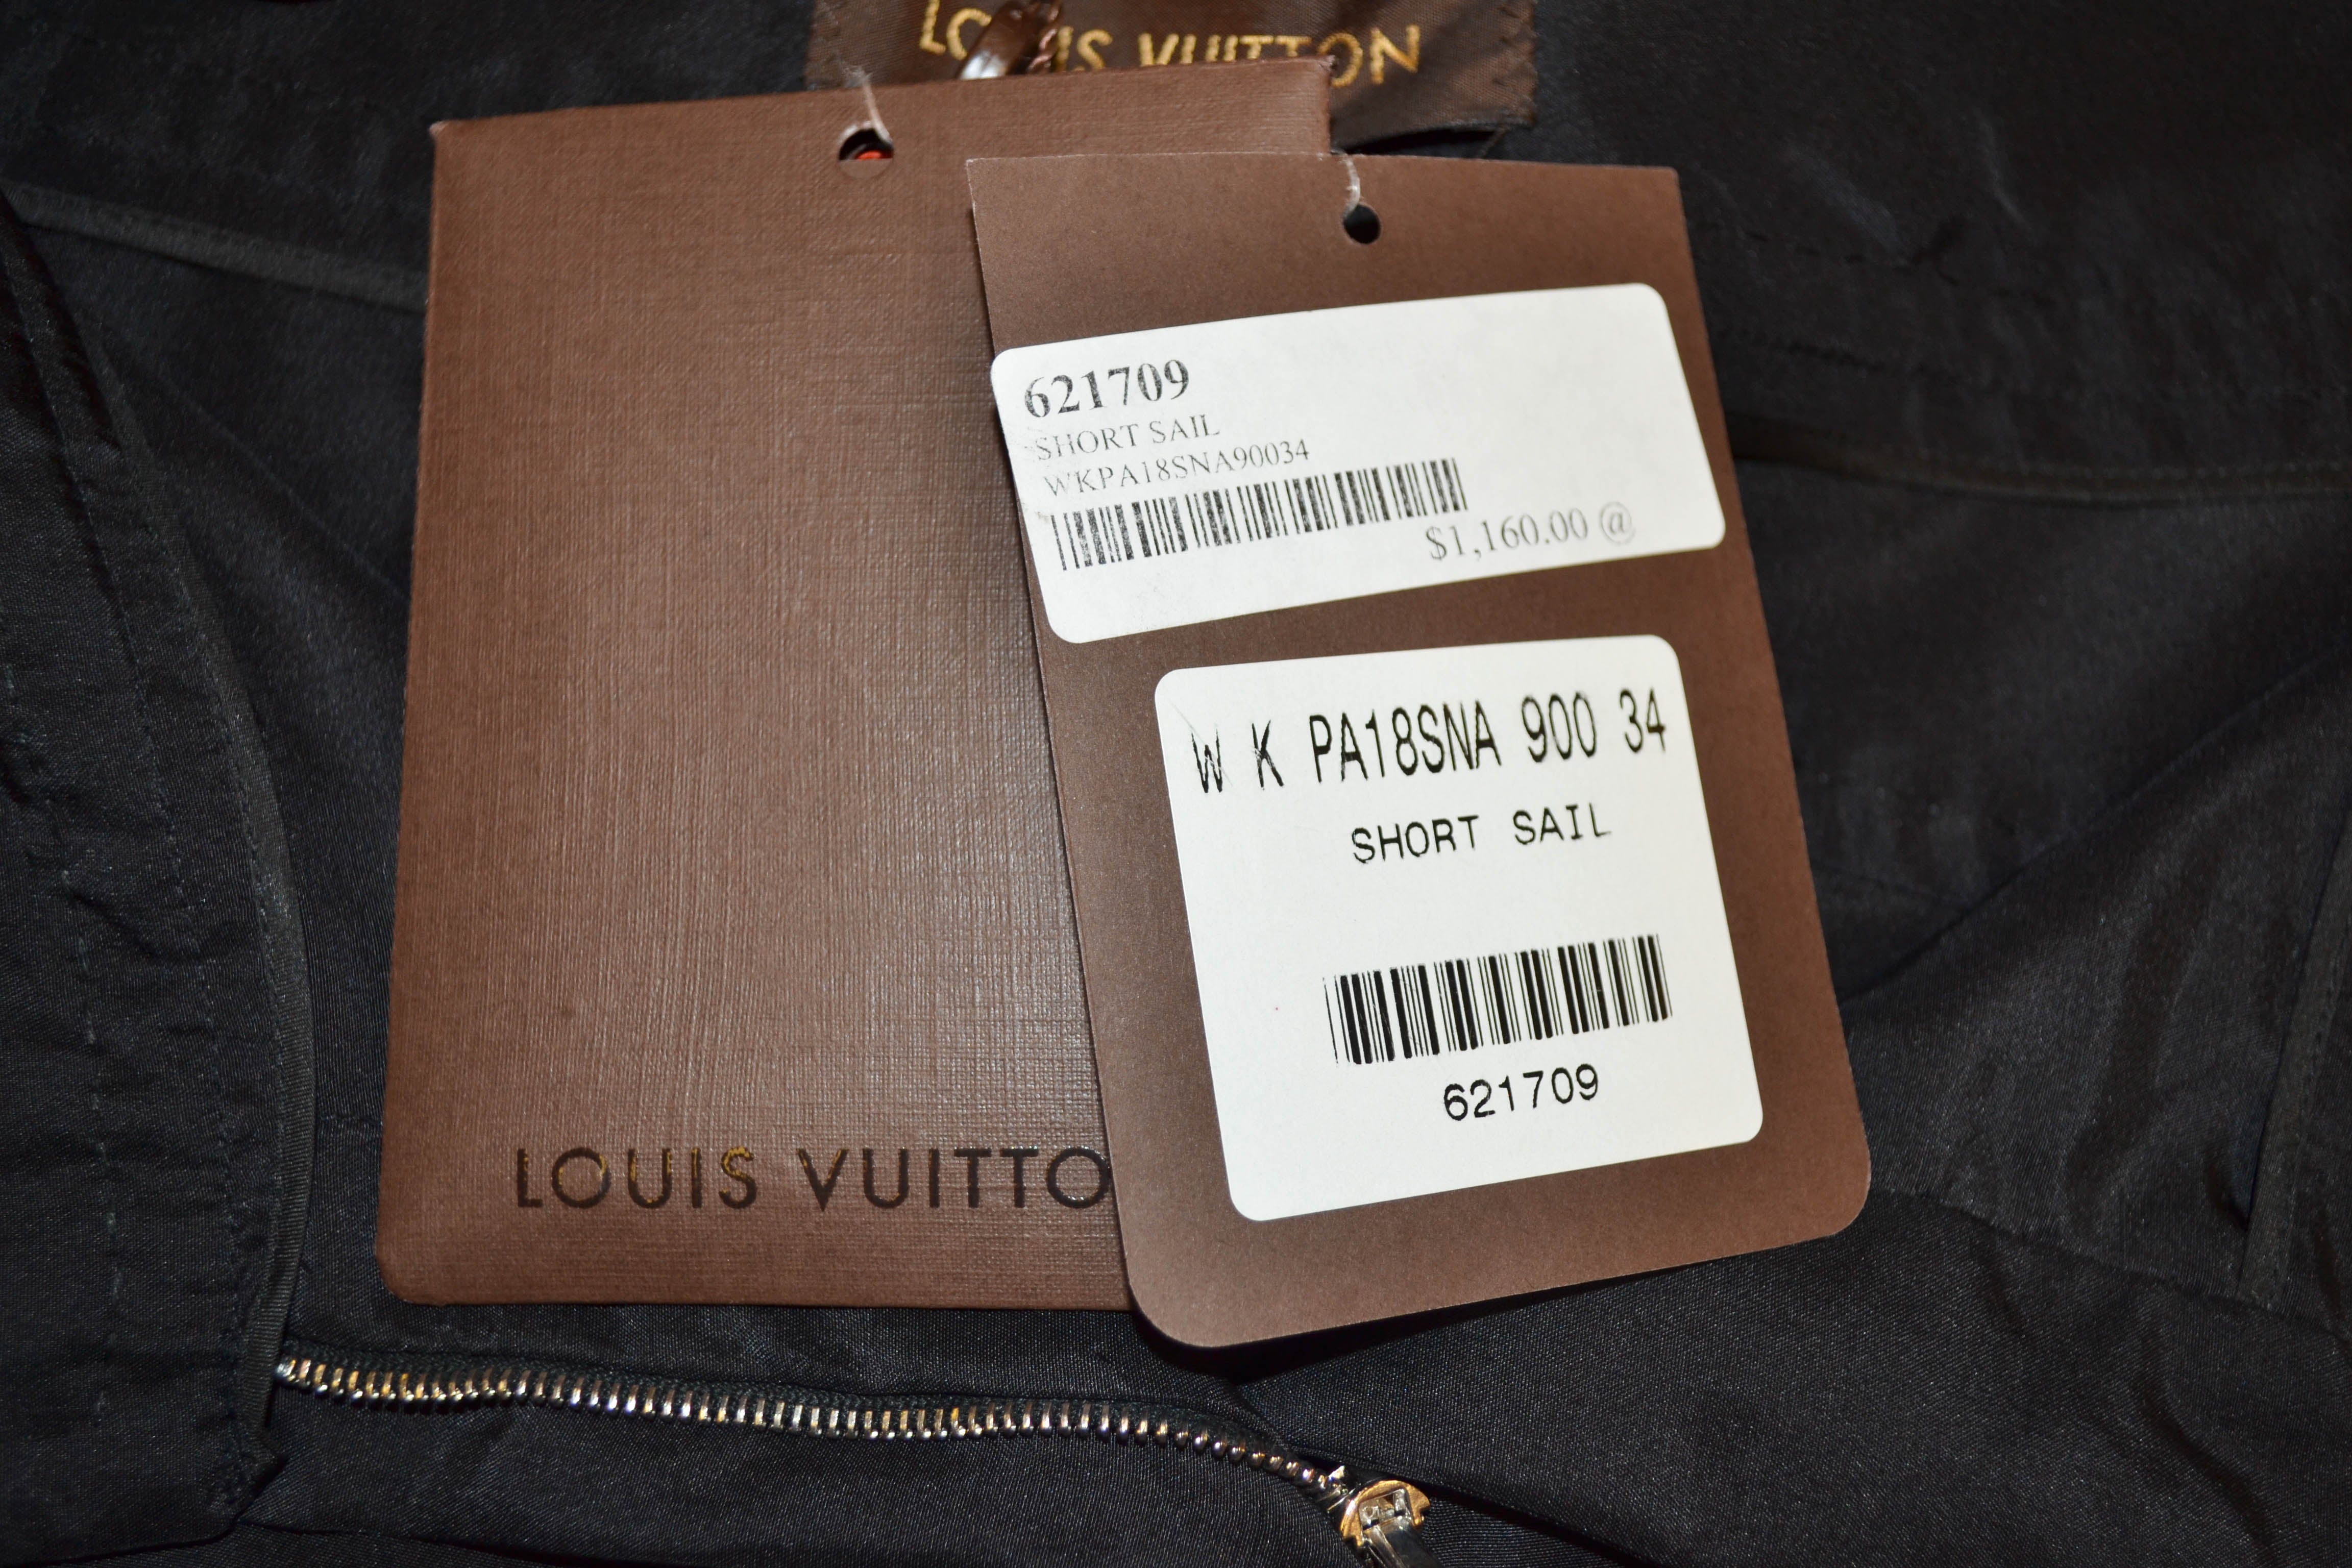 Authentic Louis Vuitton Black 100% Silk Capri Pants Size 34 – Paris Station  Shop